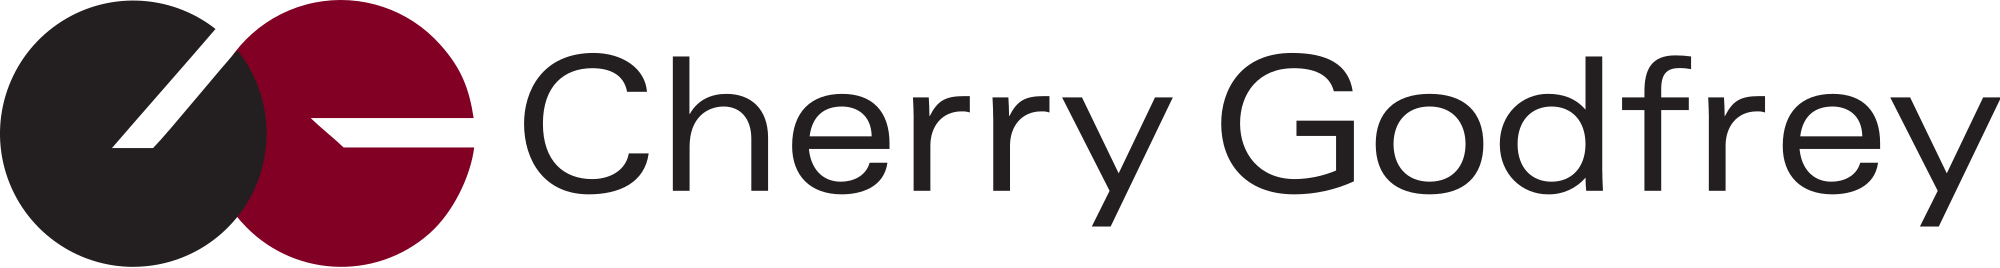 Logo Cherry Godfrey